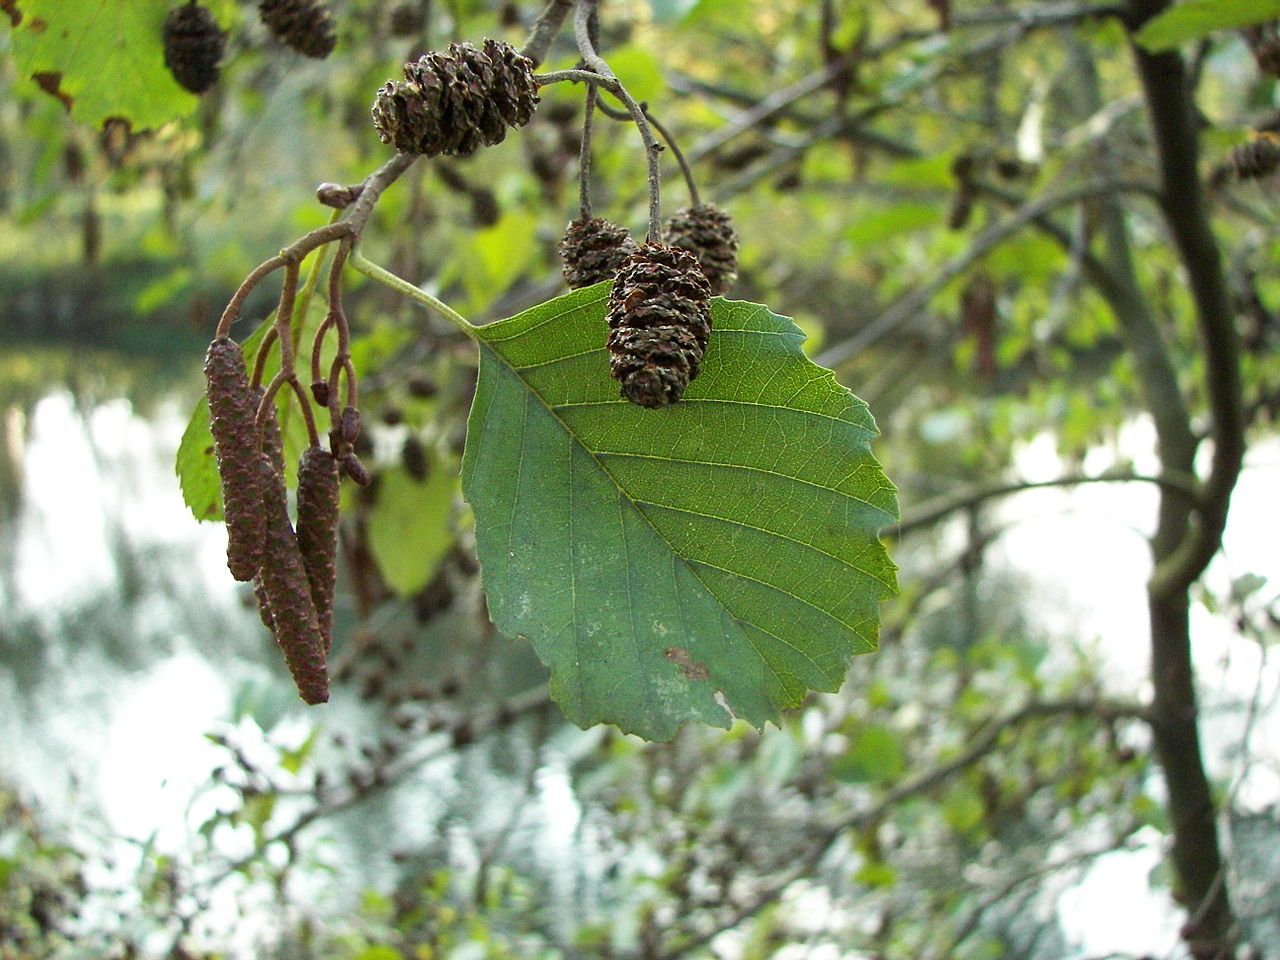 L'Aulne glutineux est un arbre présent dans le Marais poitevin. Il a l'écorce grise et fissurée. Ses feuilles sont arrondies et légèrement dessinées en forme de cœur. Les fruits de l'aulne sont coniques.